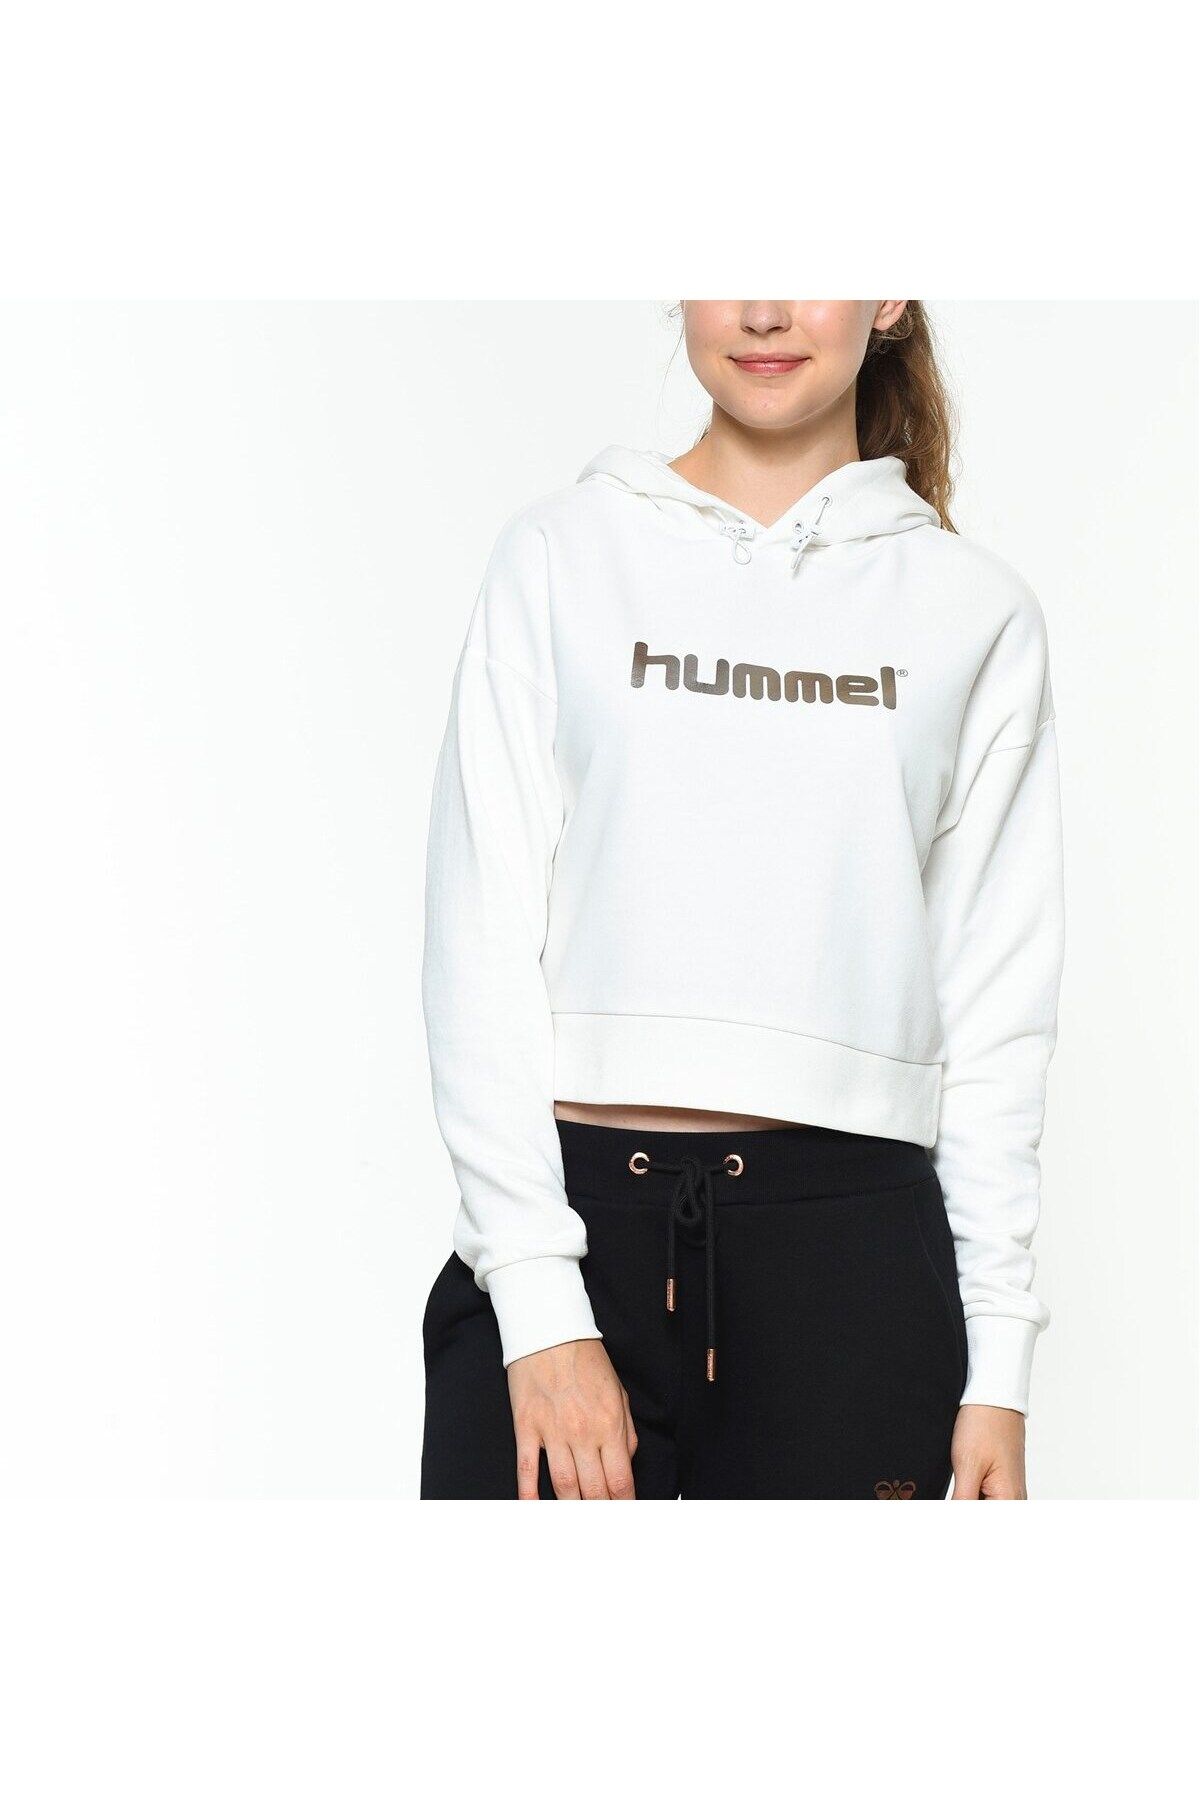 hummel Rayce Kadın Beyaz Baskılı Kapüşonlu Sweatshirt